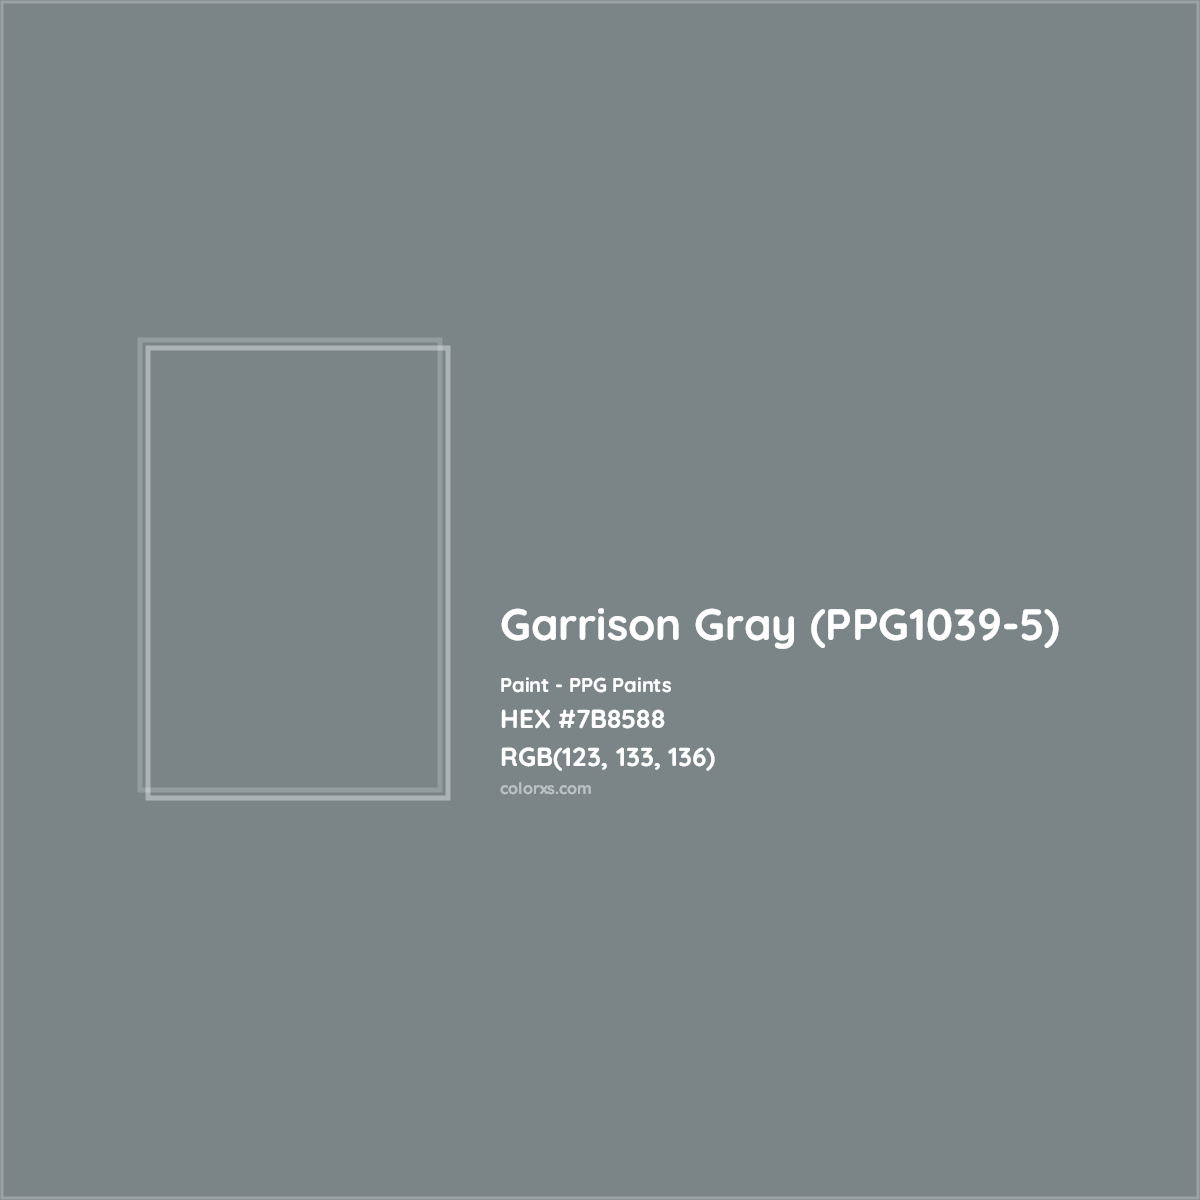 HEX #7B8588 Garrison Gray (PPG1039-5) Paint PPG Paints - Color Code